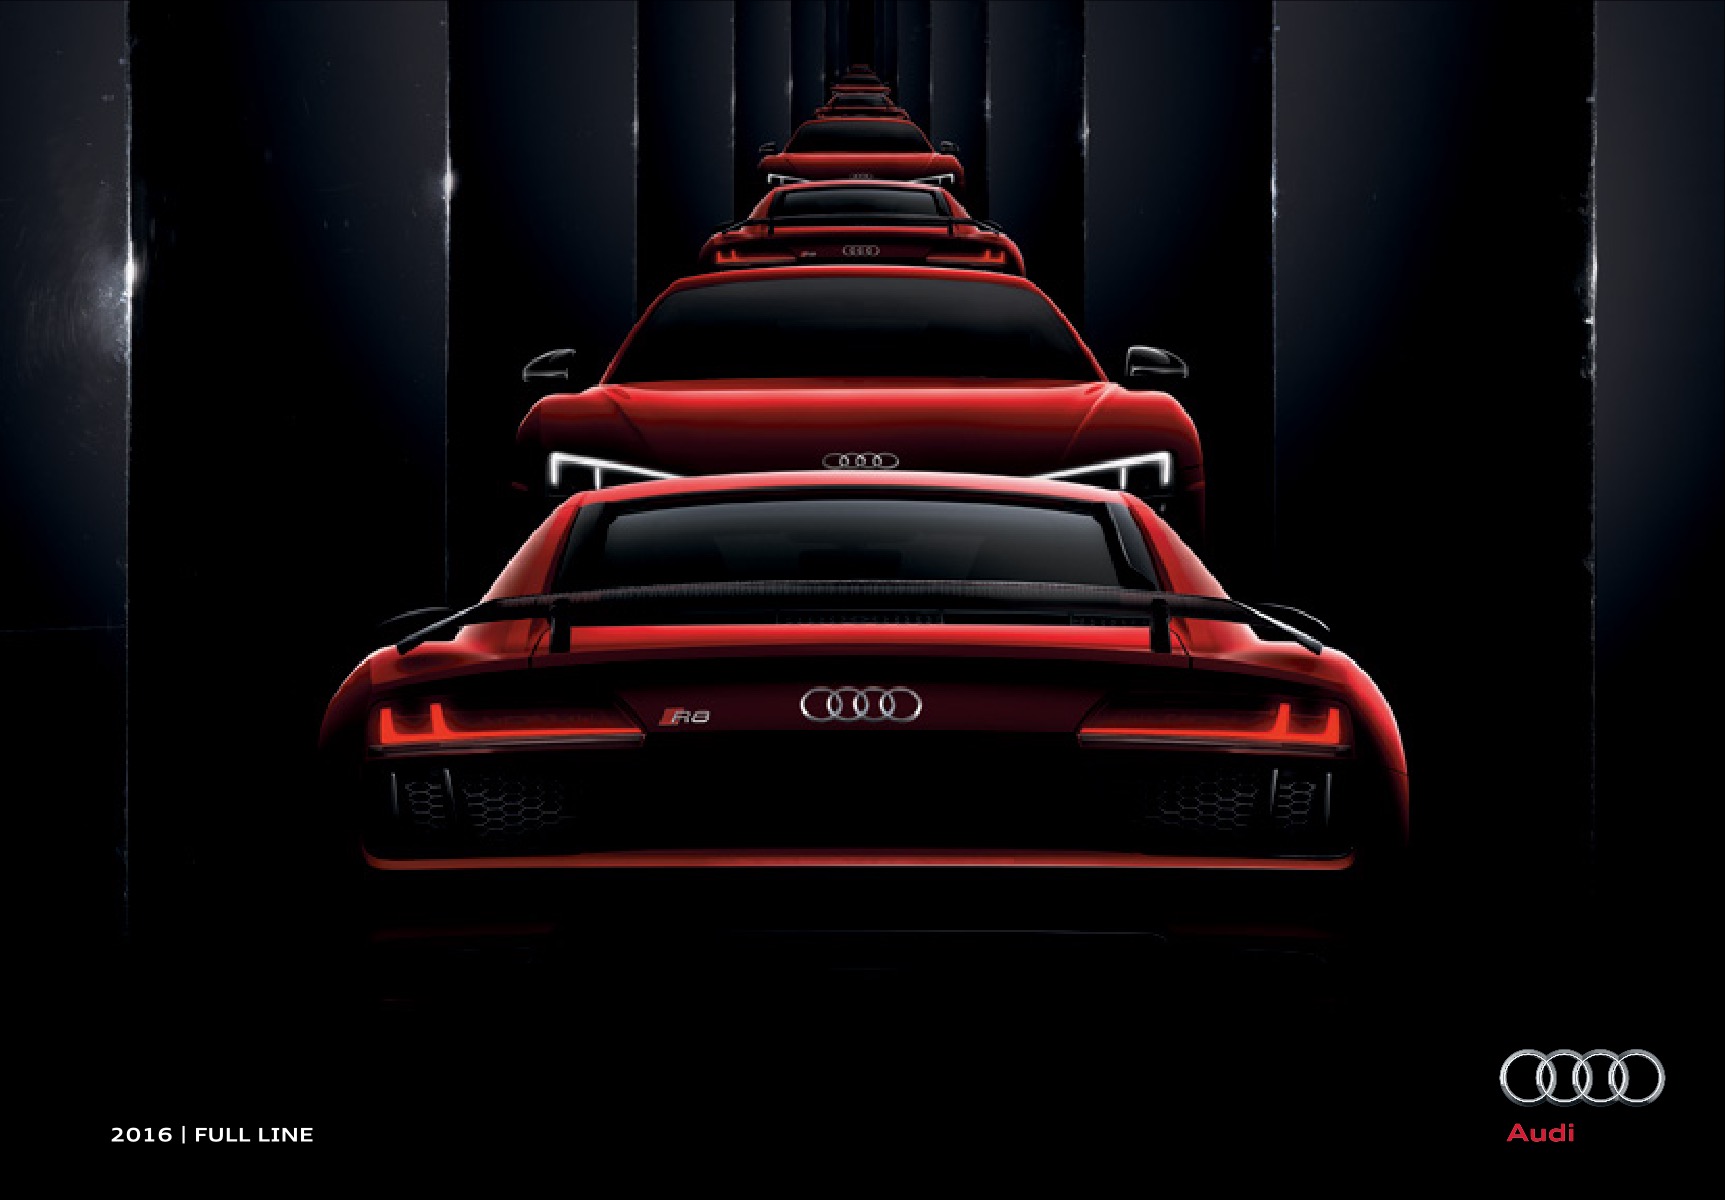 2016 Audi Full Line Brochure